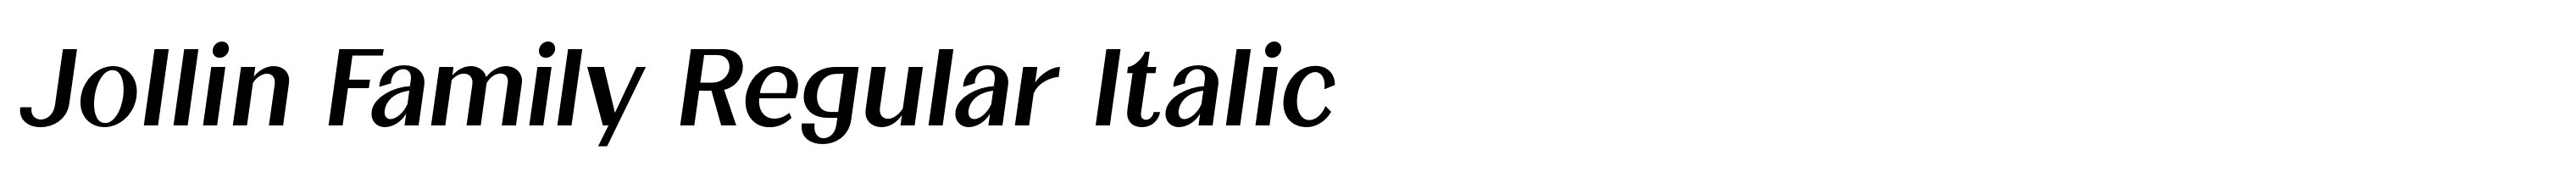 Jollin Family Regular Italic